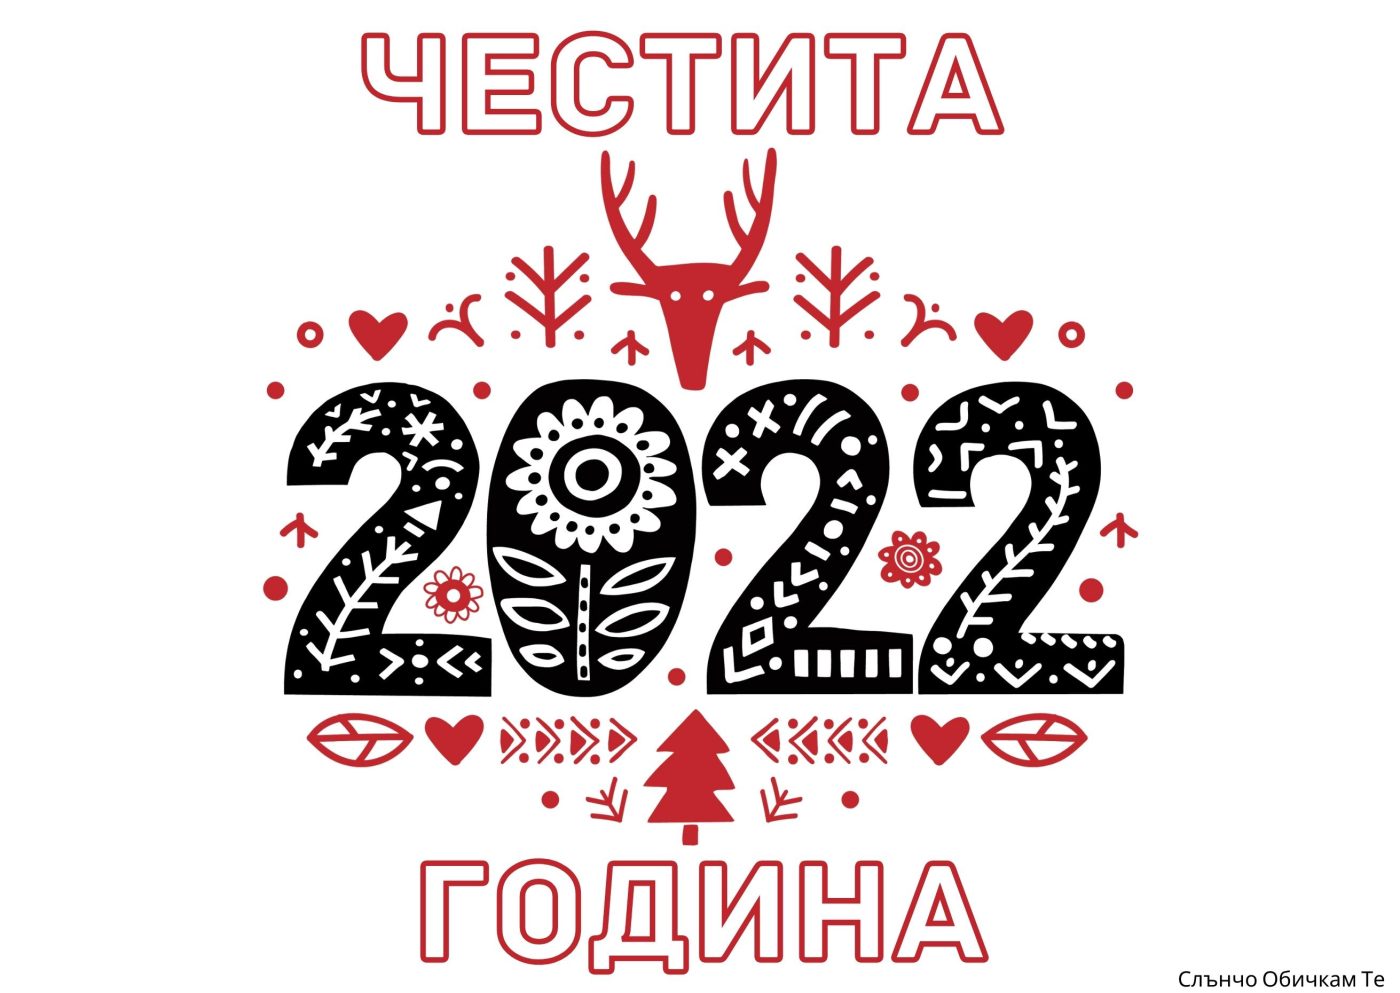 Честита 2022 година в червено-черно - картички за Нова година 2022, новогодишни пожелания, слънчо обичкам те, еленче, нова година червено, нова година черно